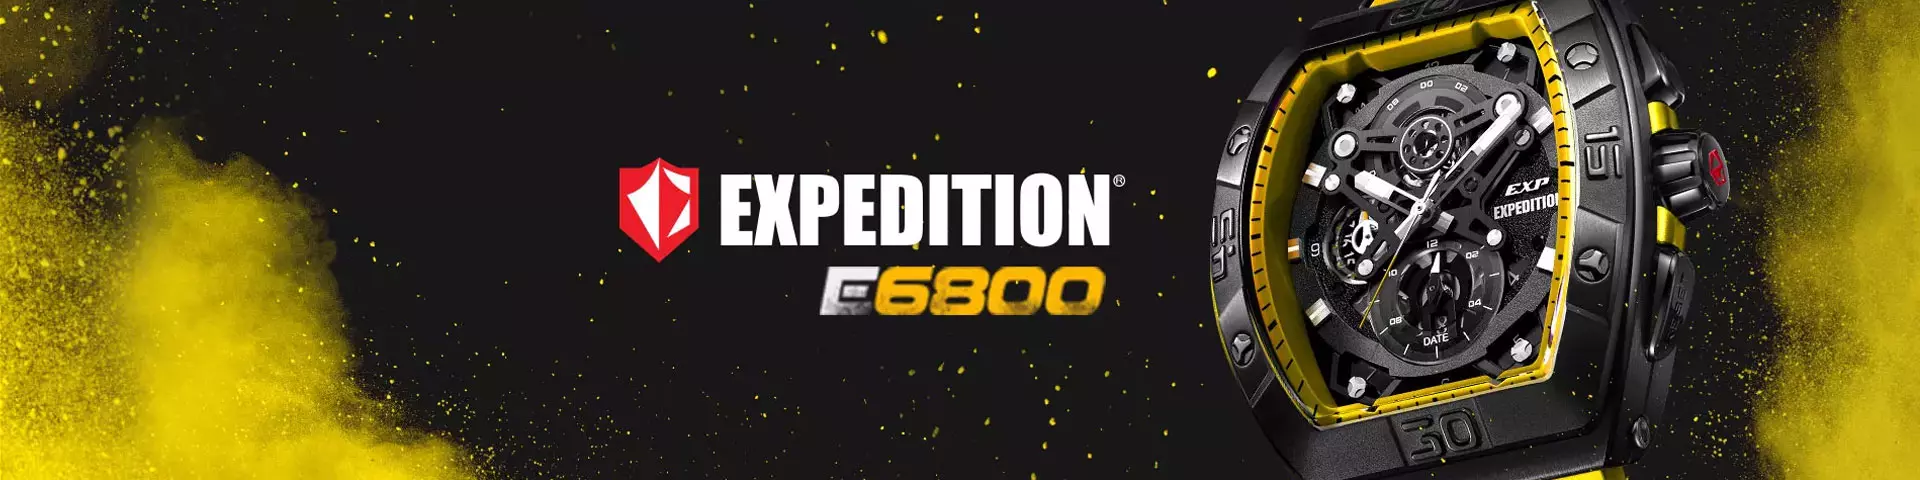 Expedition E6800